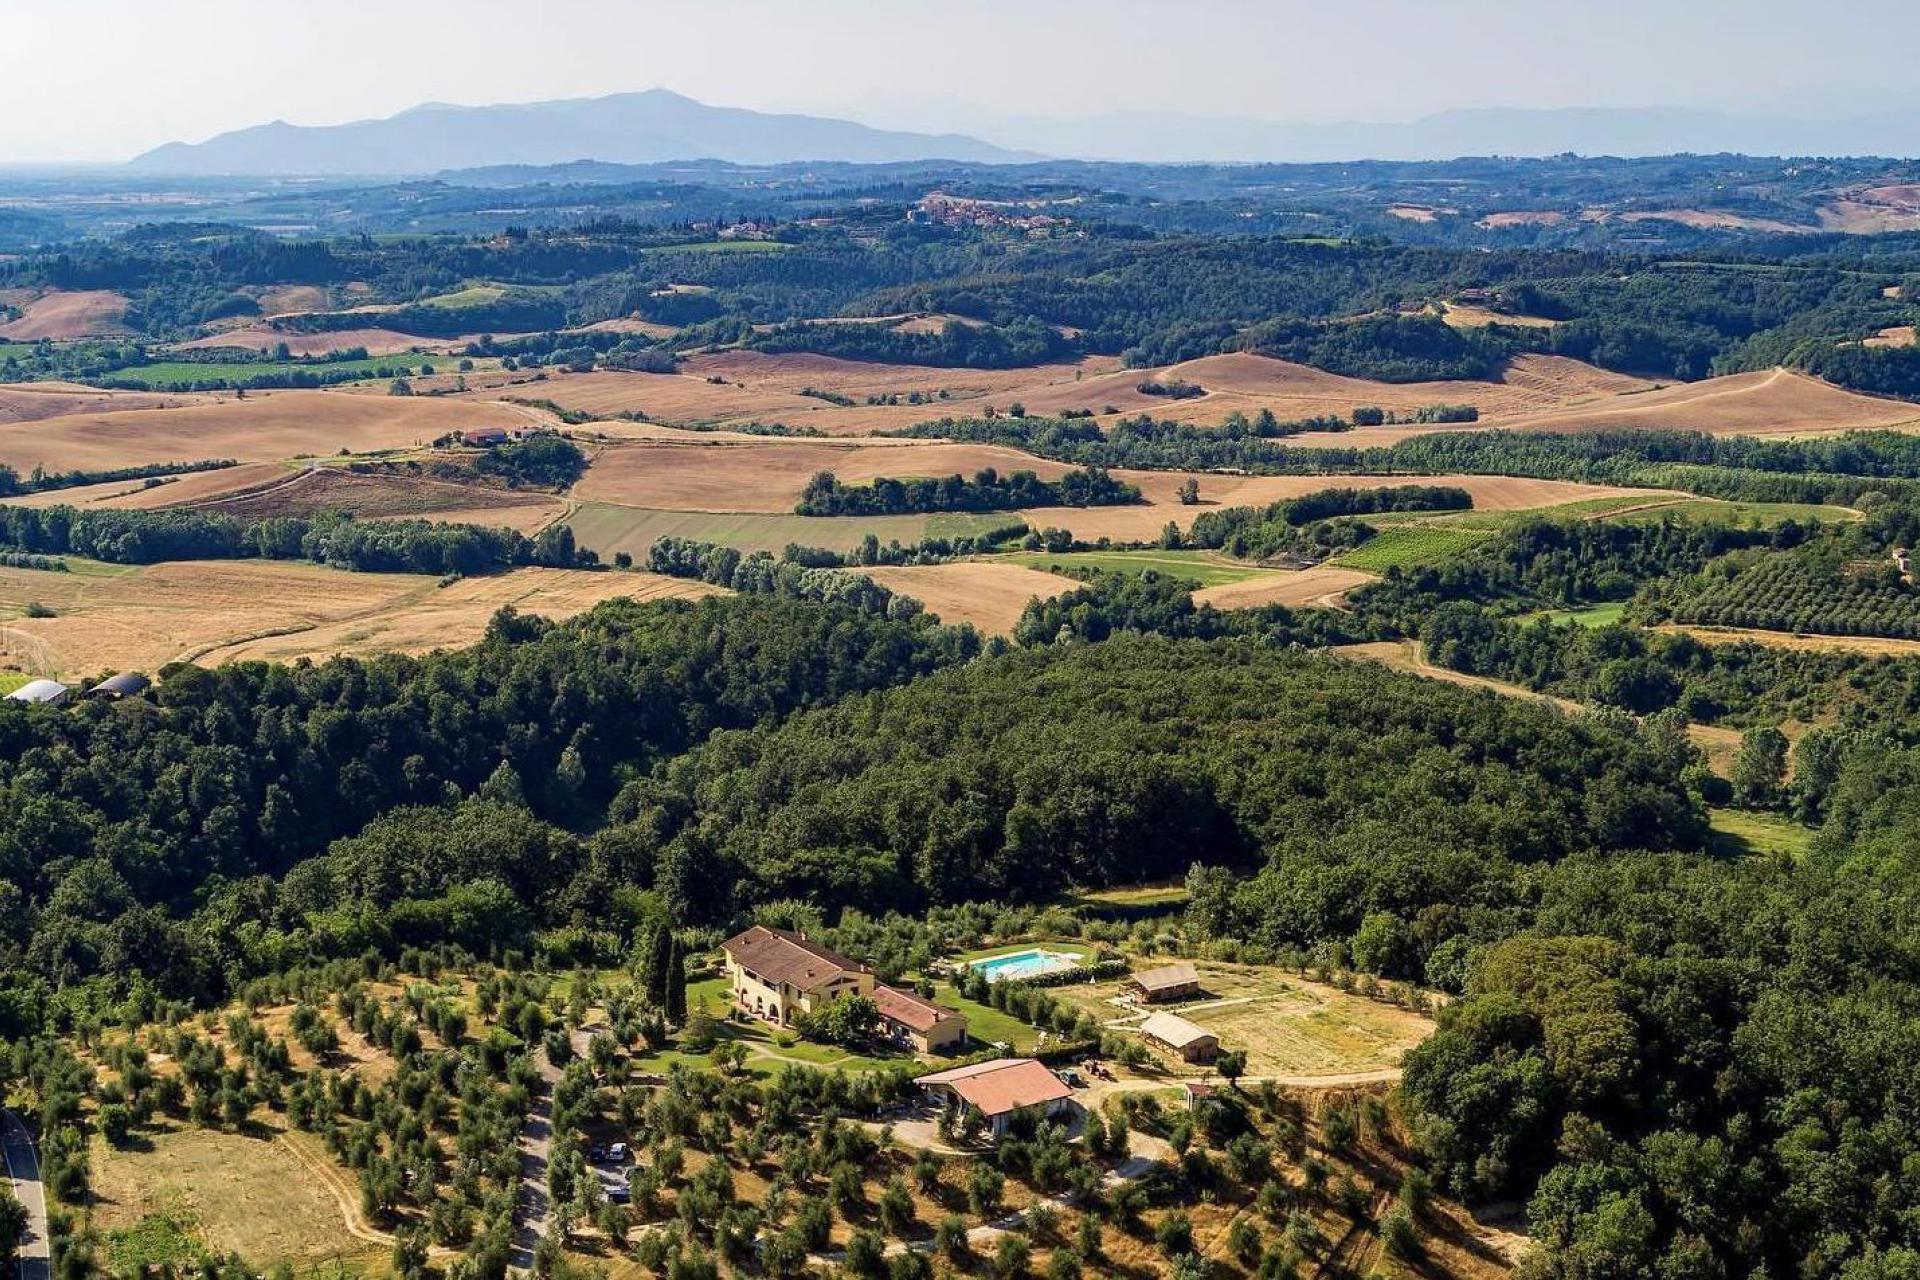 Agriturismo Toscane, gemoedelijk tussen de wijngaarden